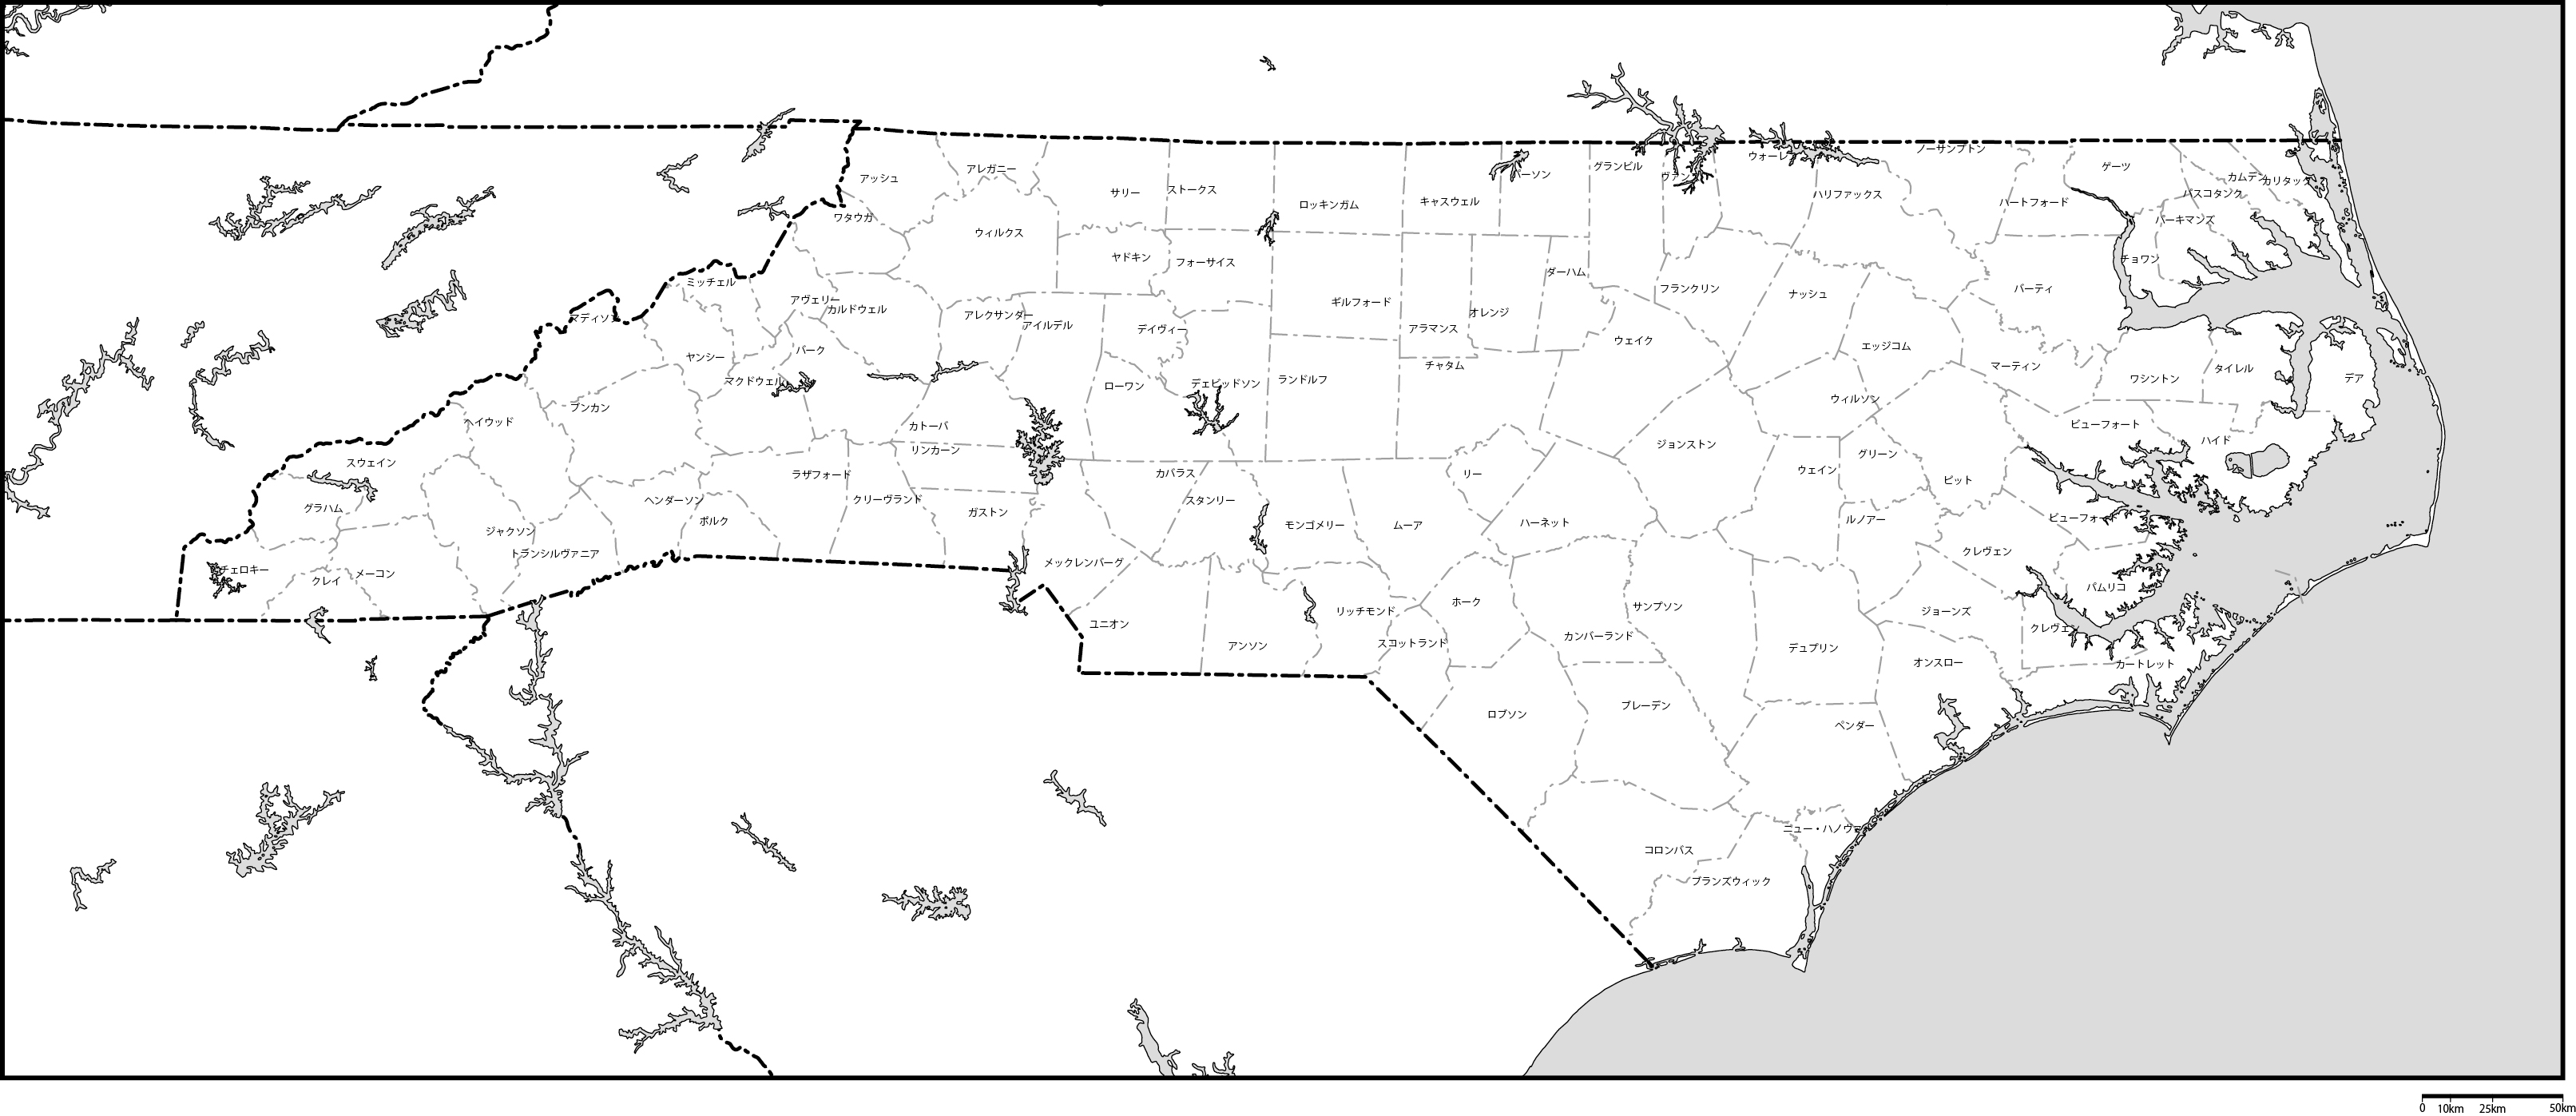 ノースカロライナ州郡分け地図郡名あり(日本語)フリーデータの画像